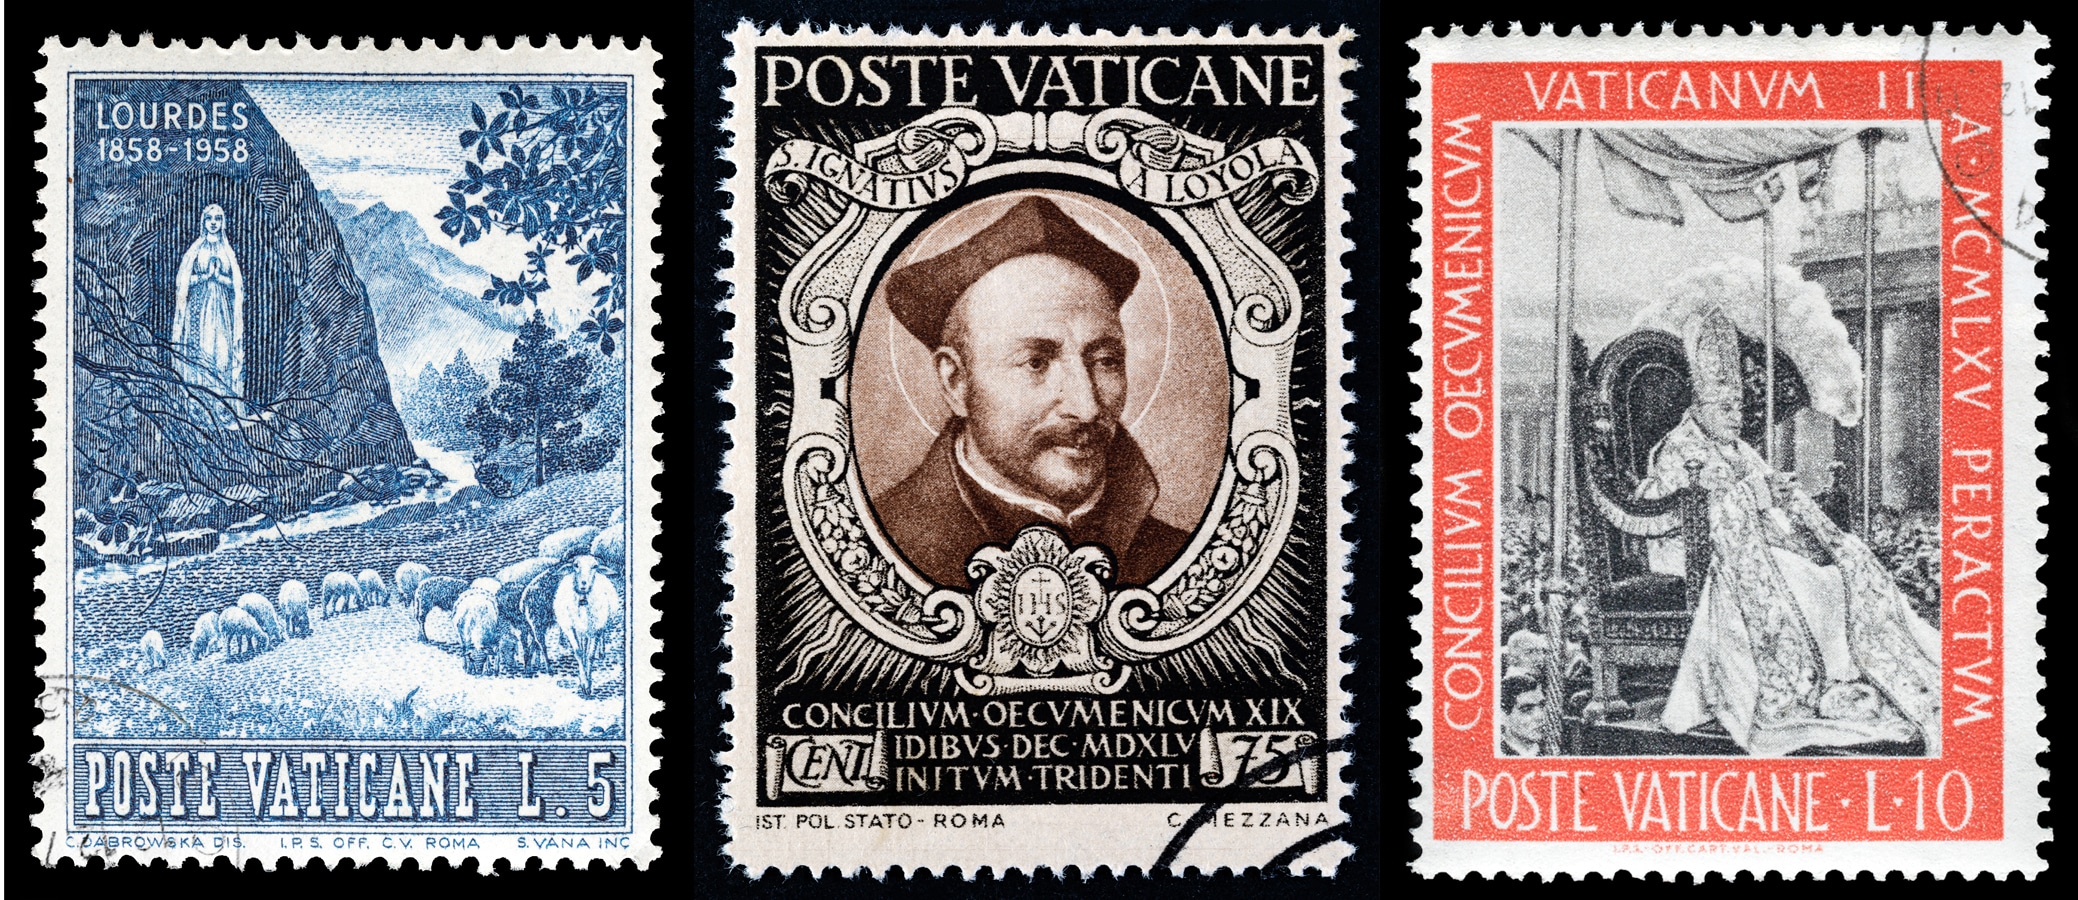 Vatikánské známky s motivy sv. Ignáce z Loyoly, Panny Marie Lurdské a papeže Jana XXIII.